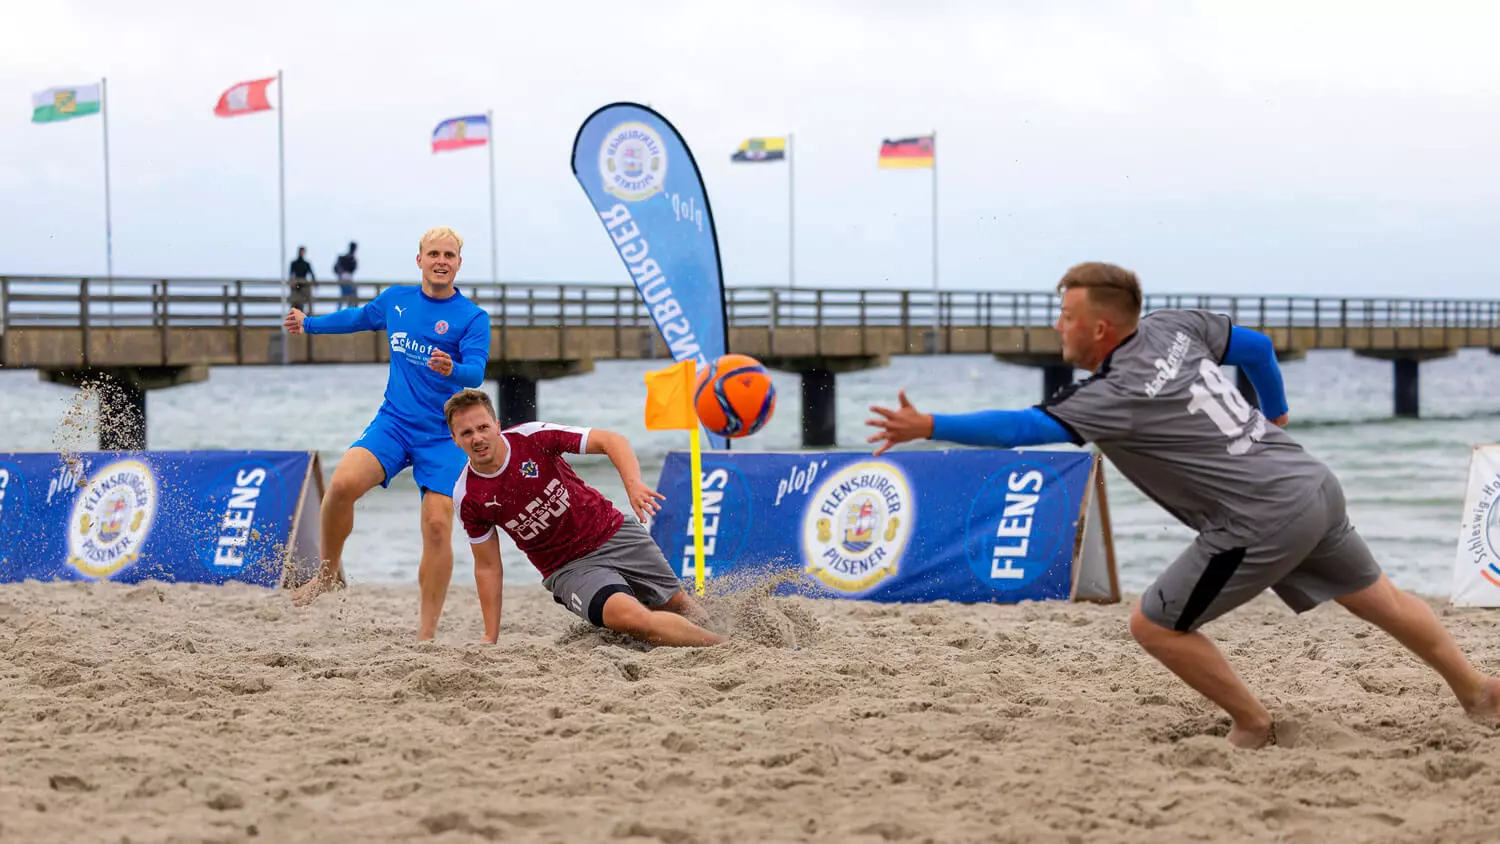 Teilnehmer des FLENS Beach Trophy Turniers am Strand bei einem Torschuss.